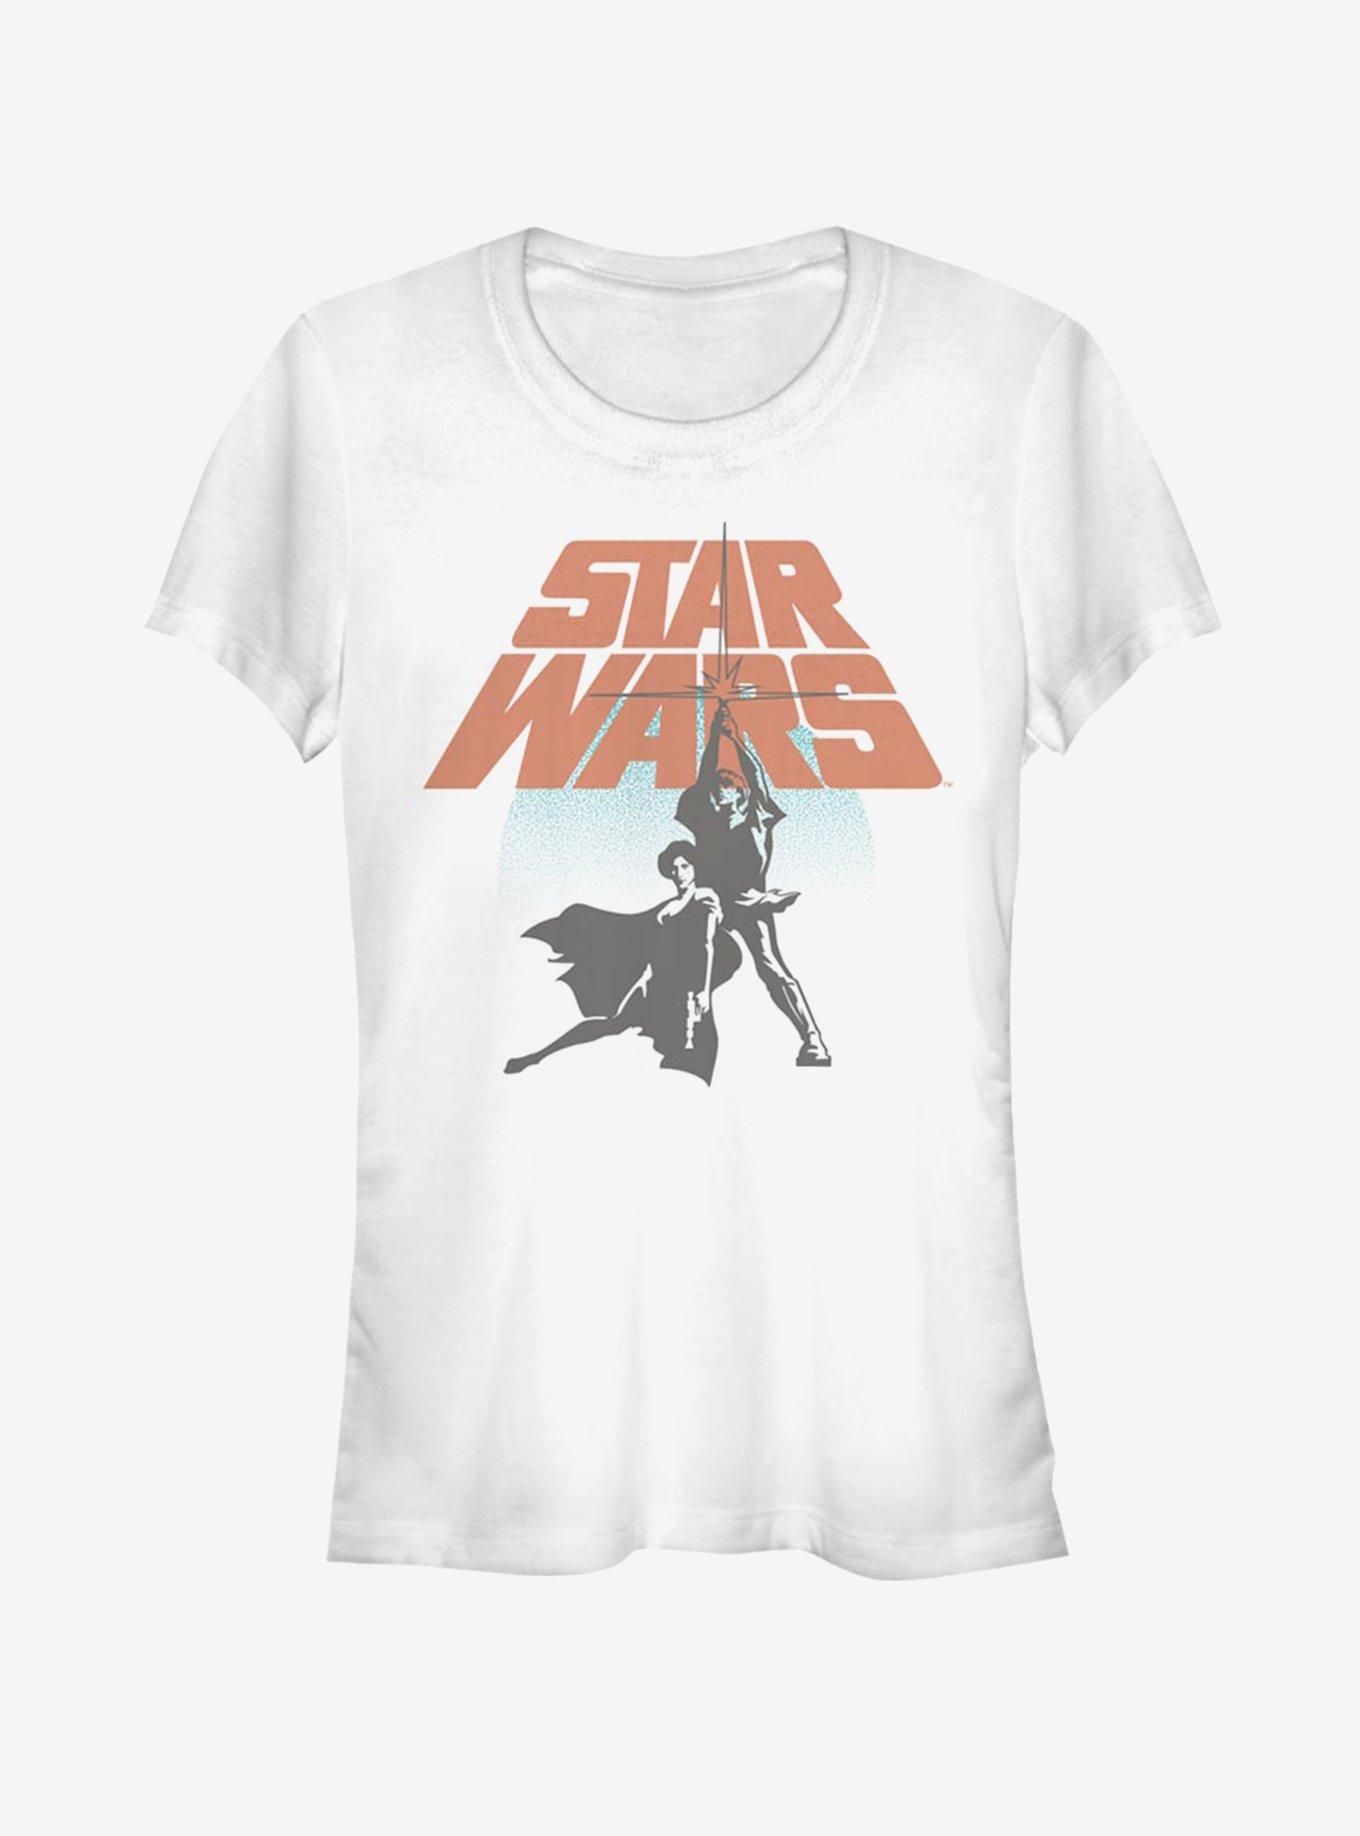 Star Wars Star Wars Circle Girls T-Shirt, WHITE, hi-res